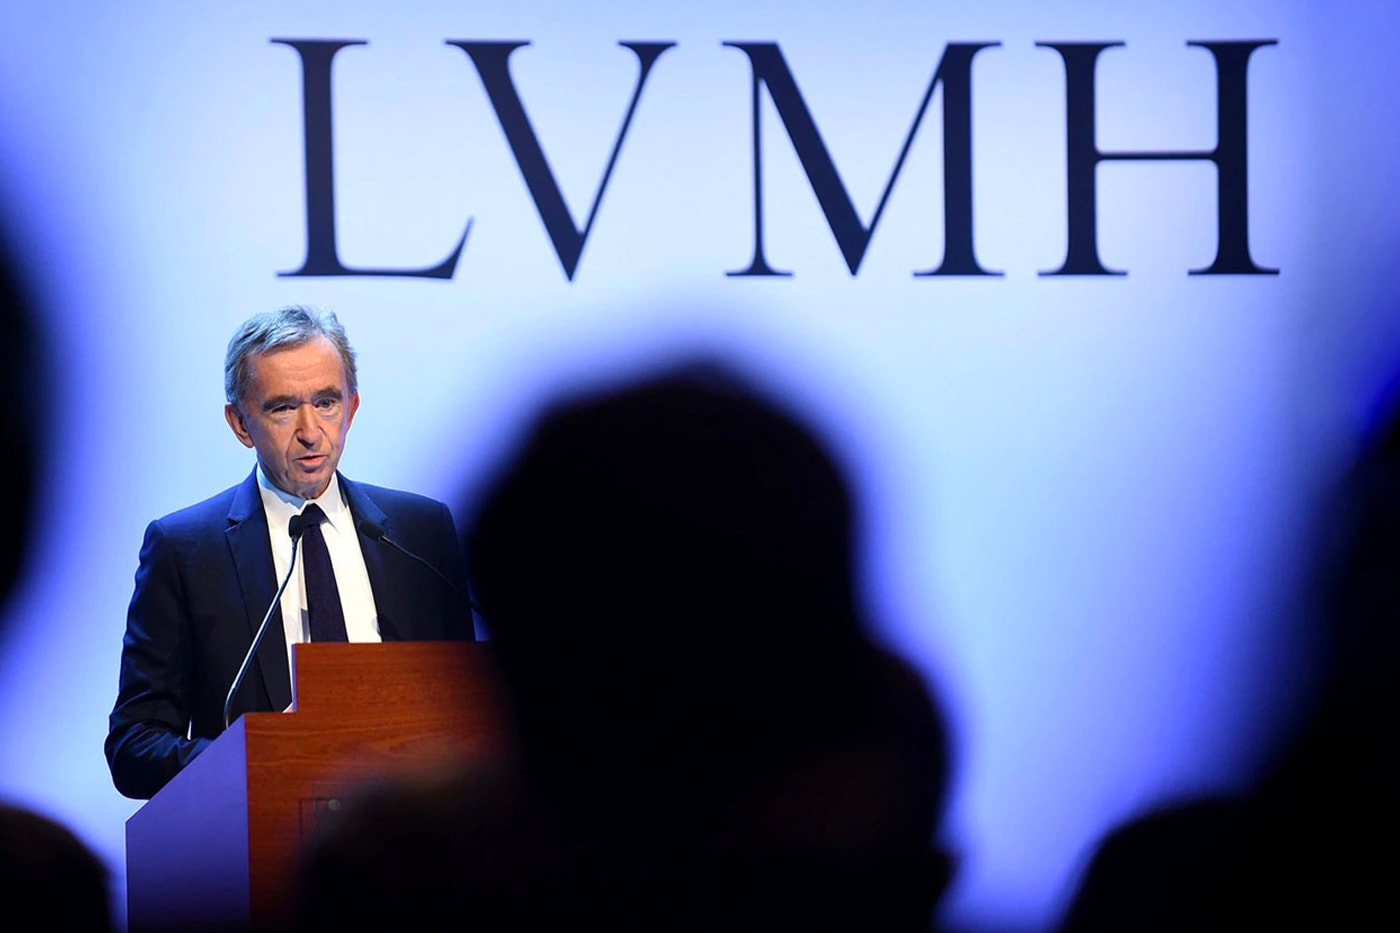 消息称 LVMH 集团有意收购 Cartier 母公司扩展珠宝业务